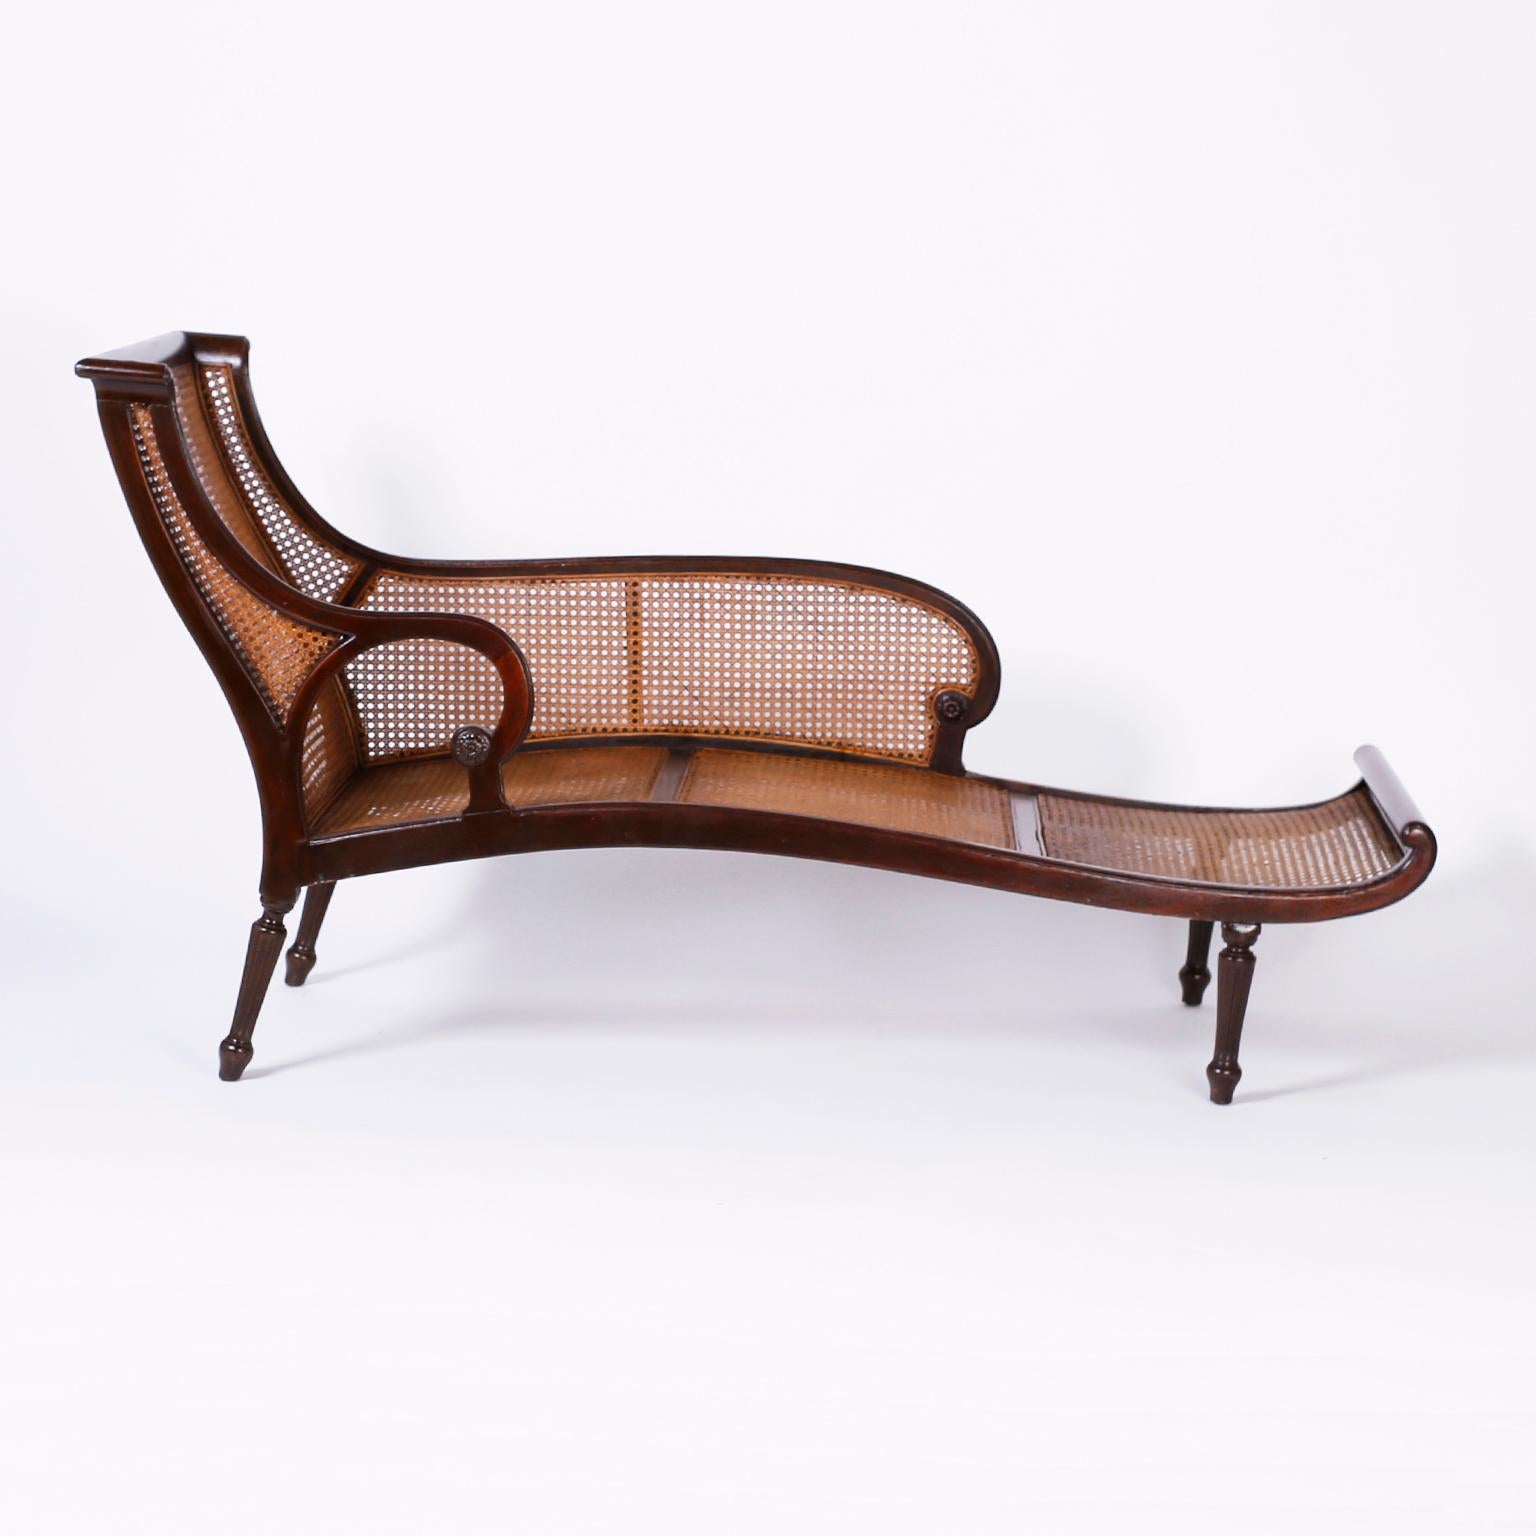 Chaise longue coloniale britannique ancienne en acajou, de forme élégante d'influence Art nouveau, avec dossier, assise et côtés cannelés, sur pieds fuselés tournés et cannelés.